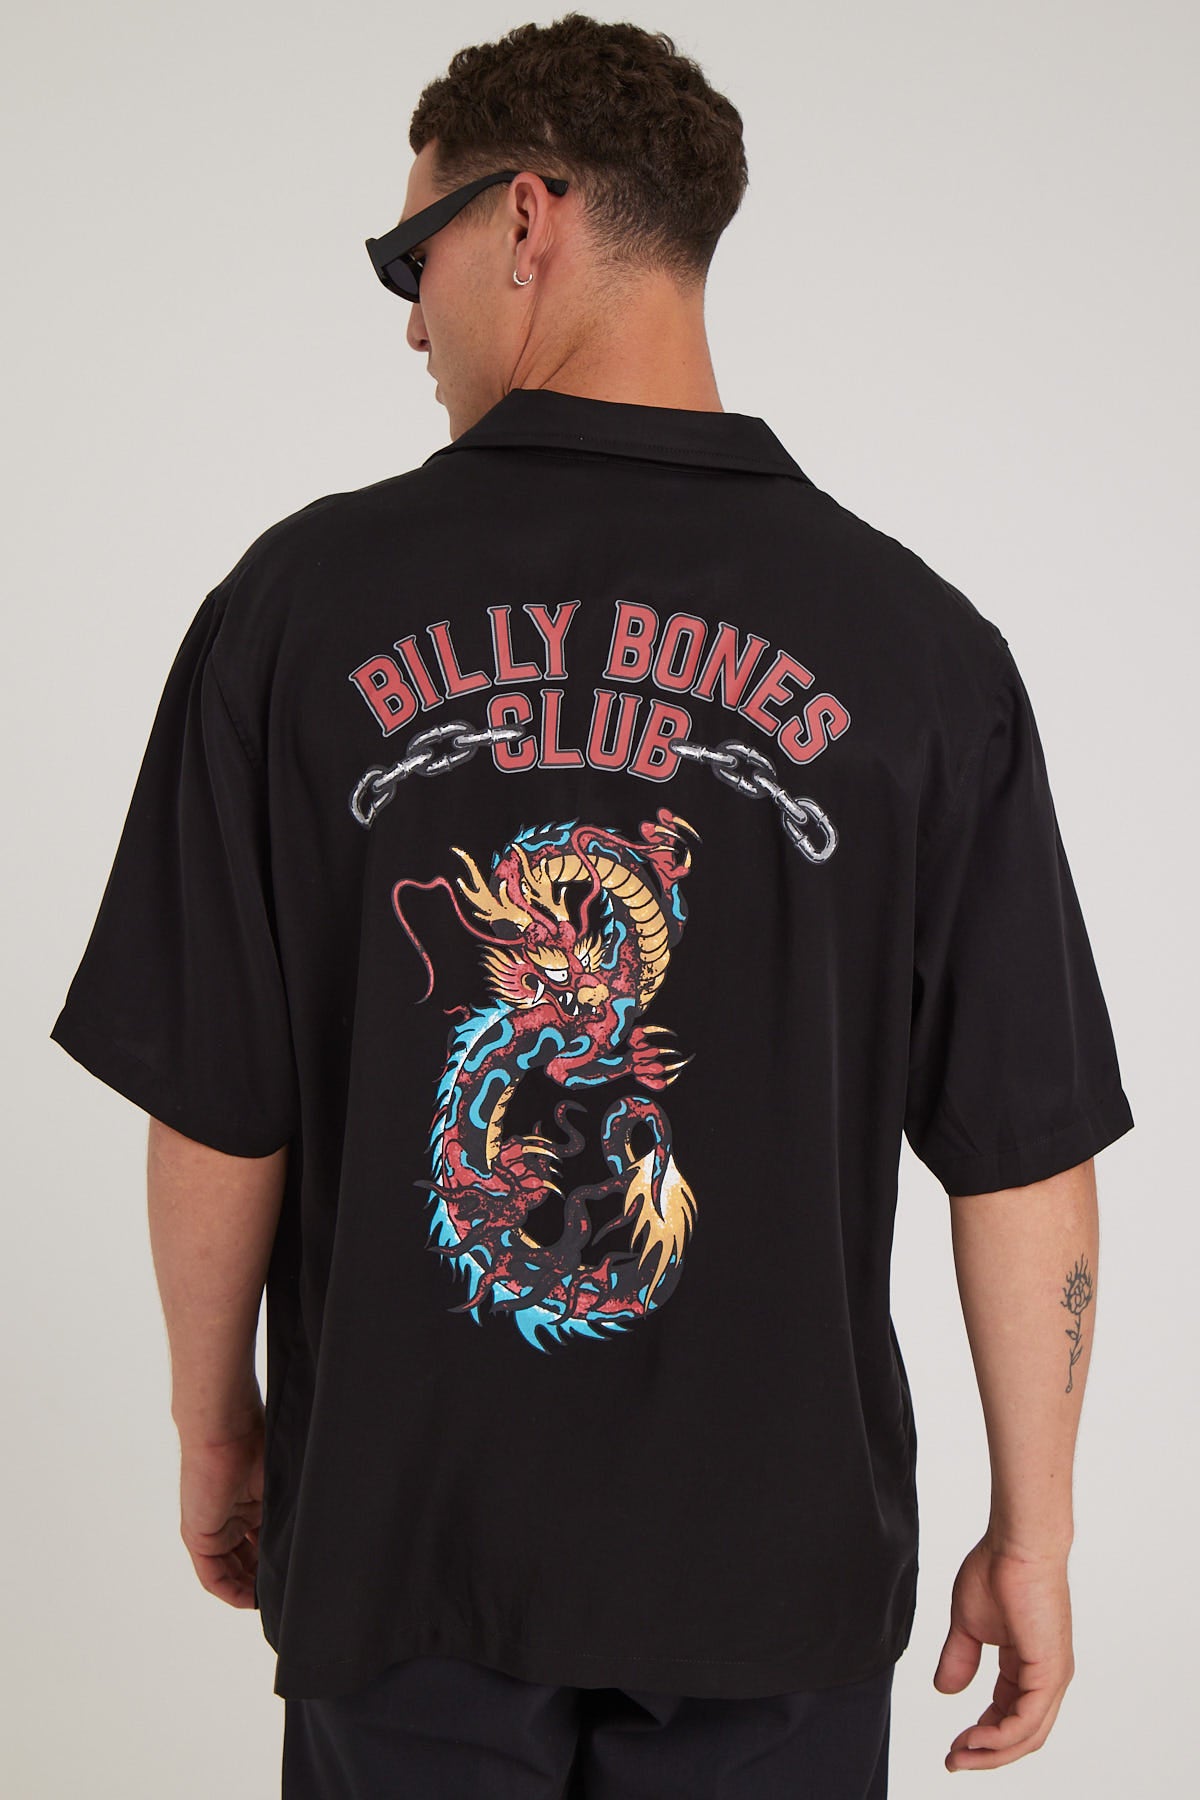 Billy Bones Club Dragon Bowlo Black Black